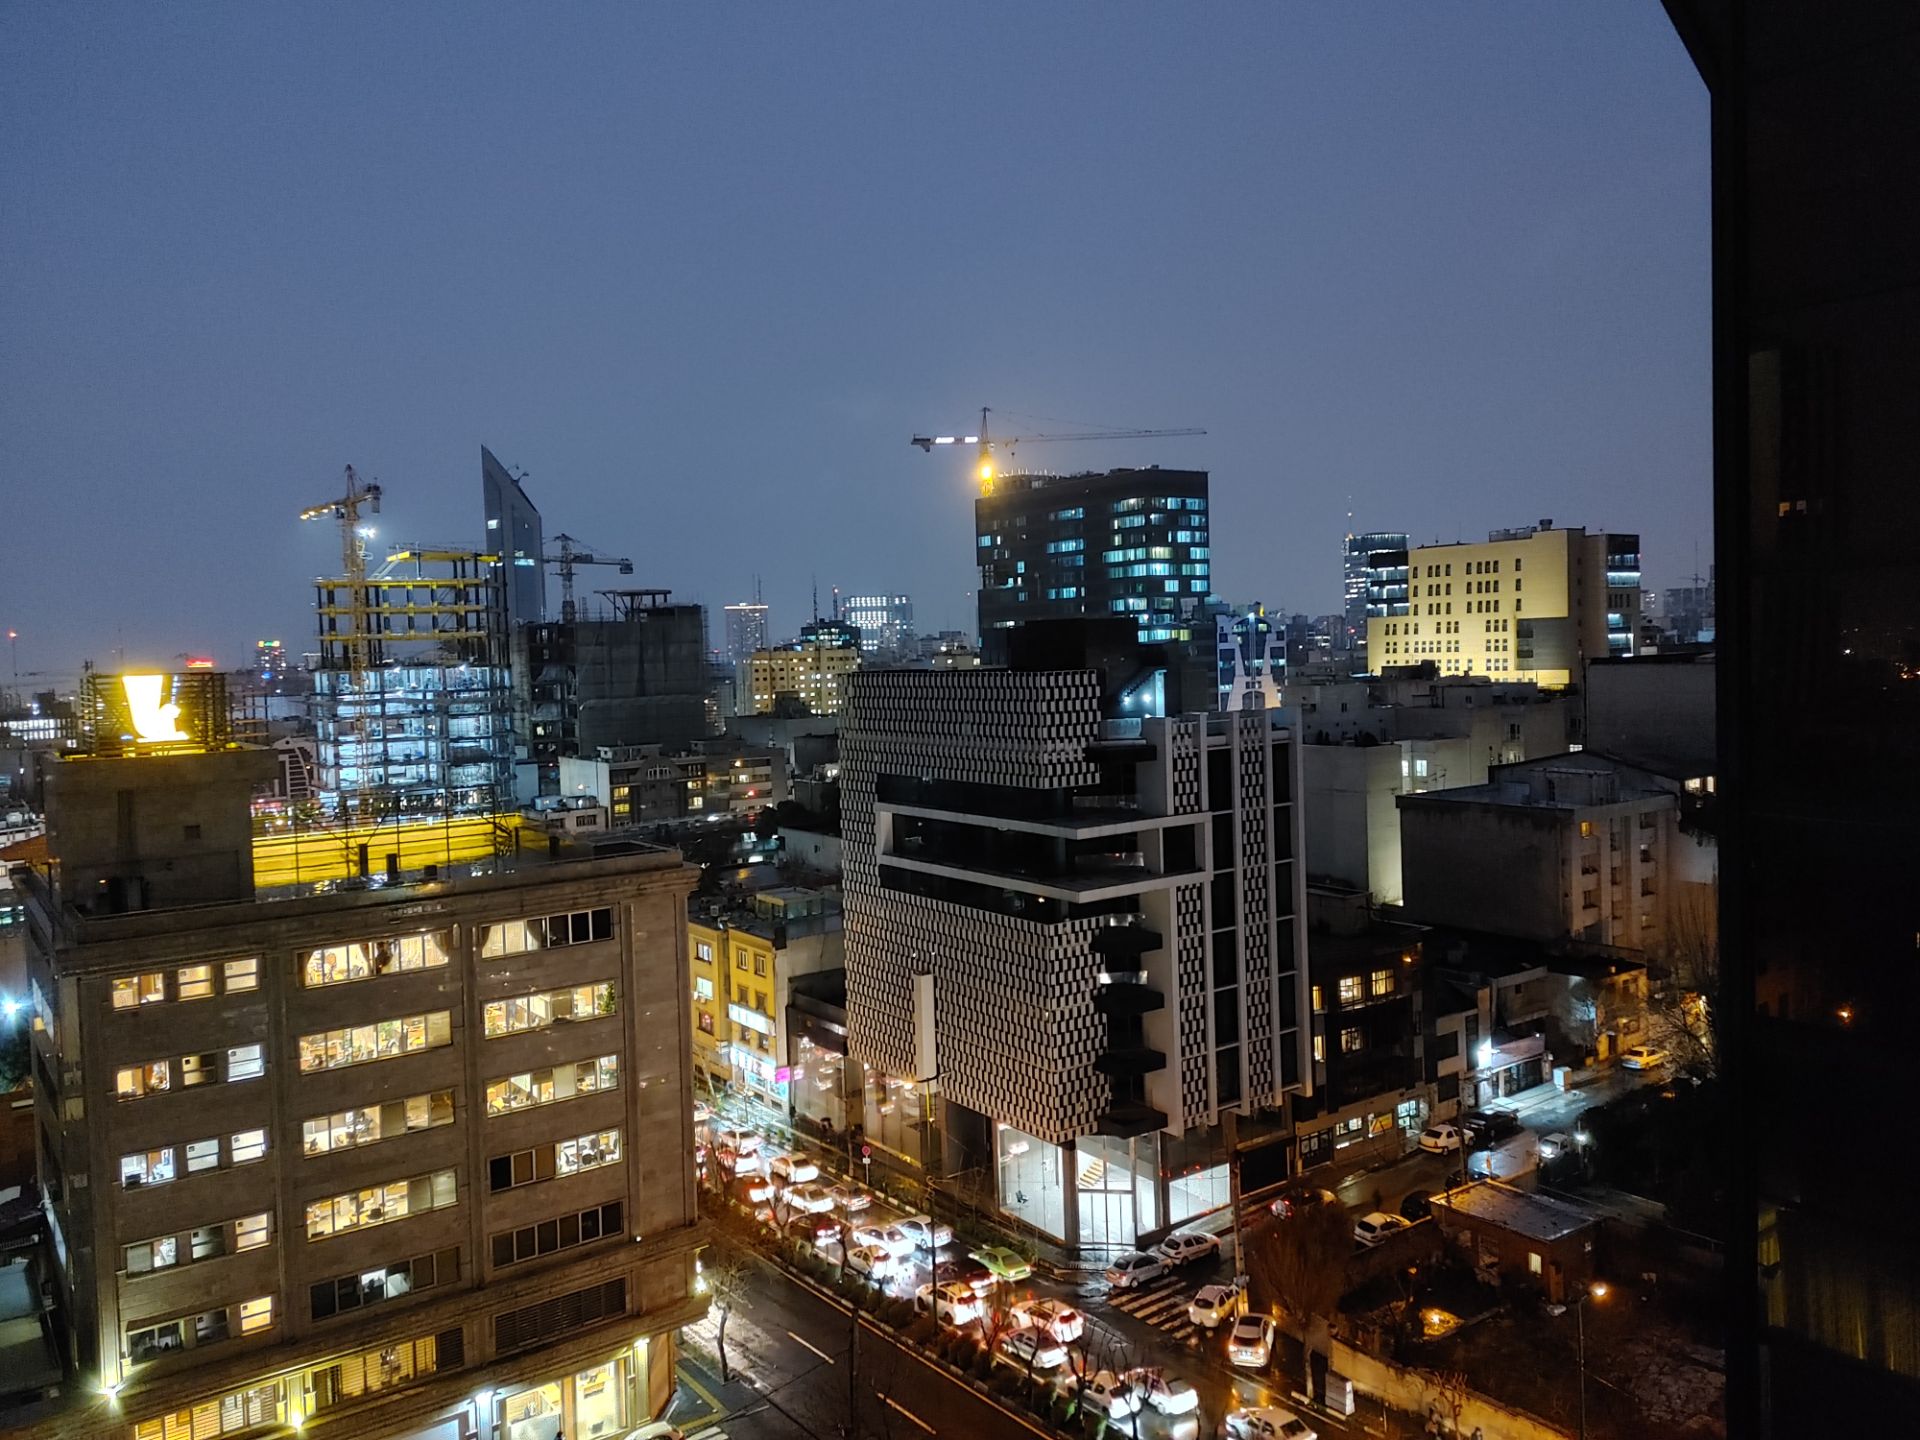 عکس نمونه دوربین واید ال جی ولوت در طول شب - ساختمان های خیابان جردن